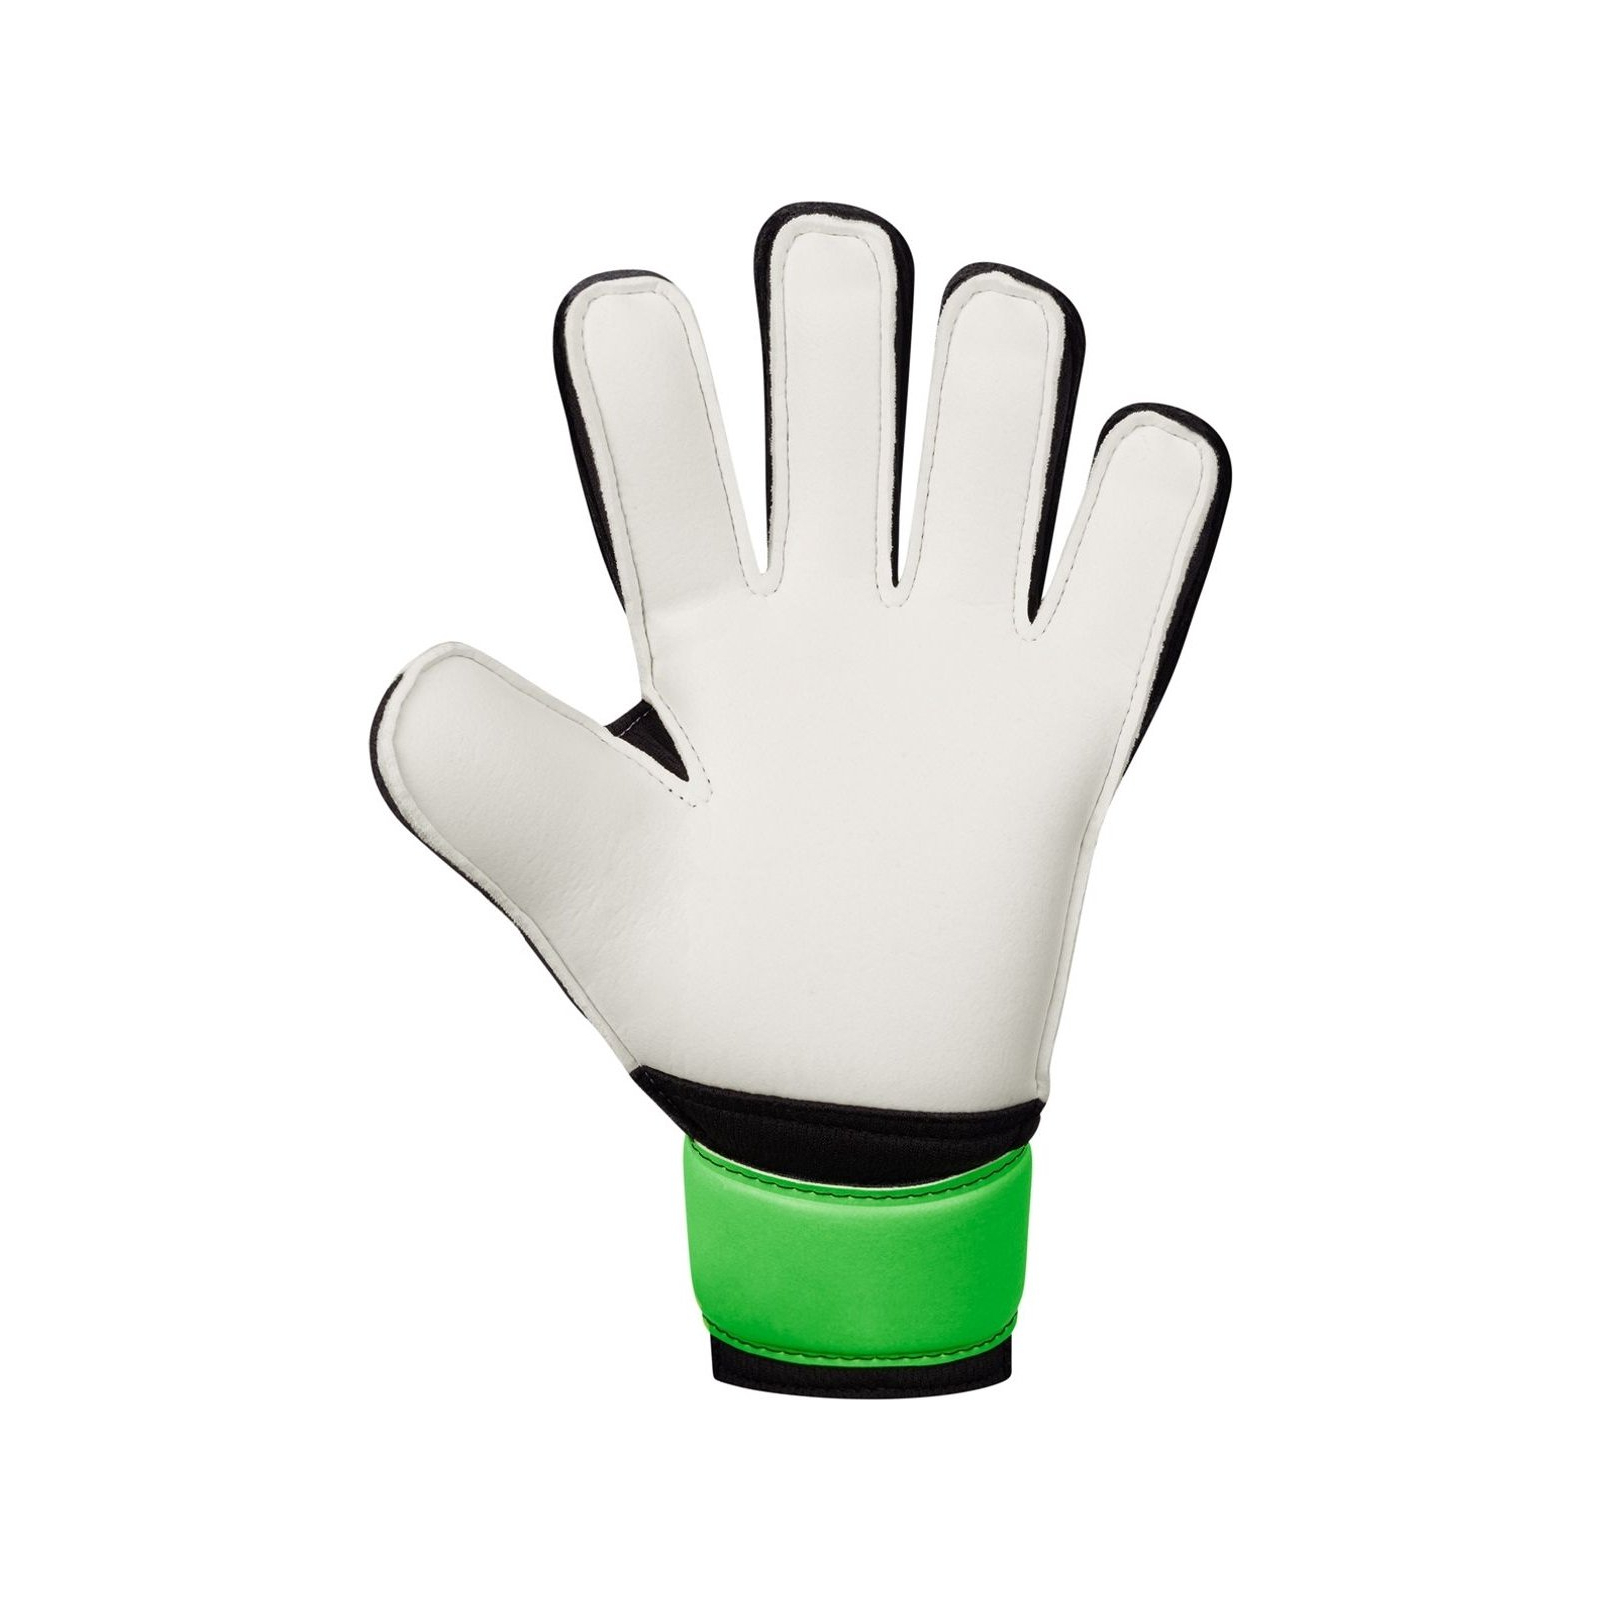 Воротарські рукавиці Jako GK Animal Basic Junior RC 2590-211 чорний, білий, зелений Діт 7 (4067633120013) зображення 3